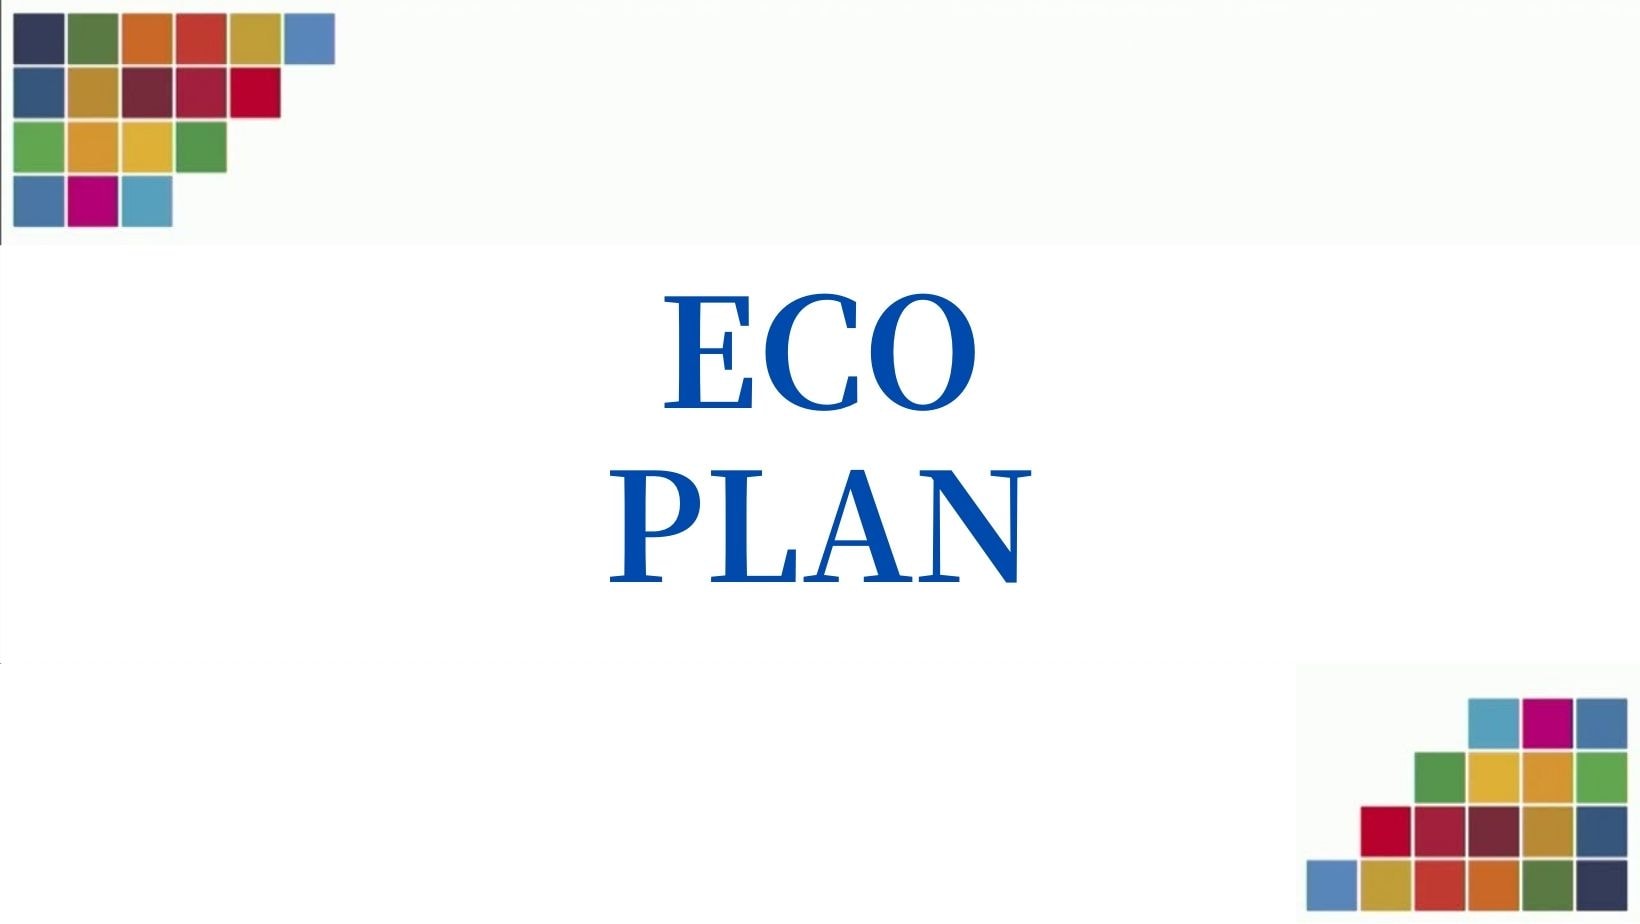 Rencana ramah lingkungan yang ramah terhadap bumi